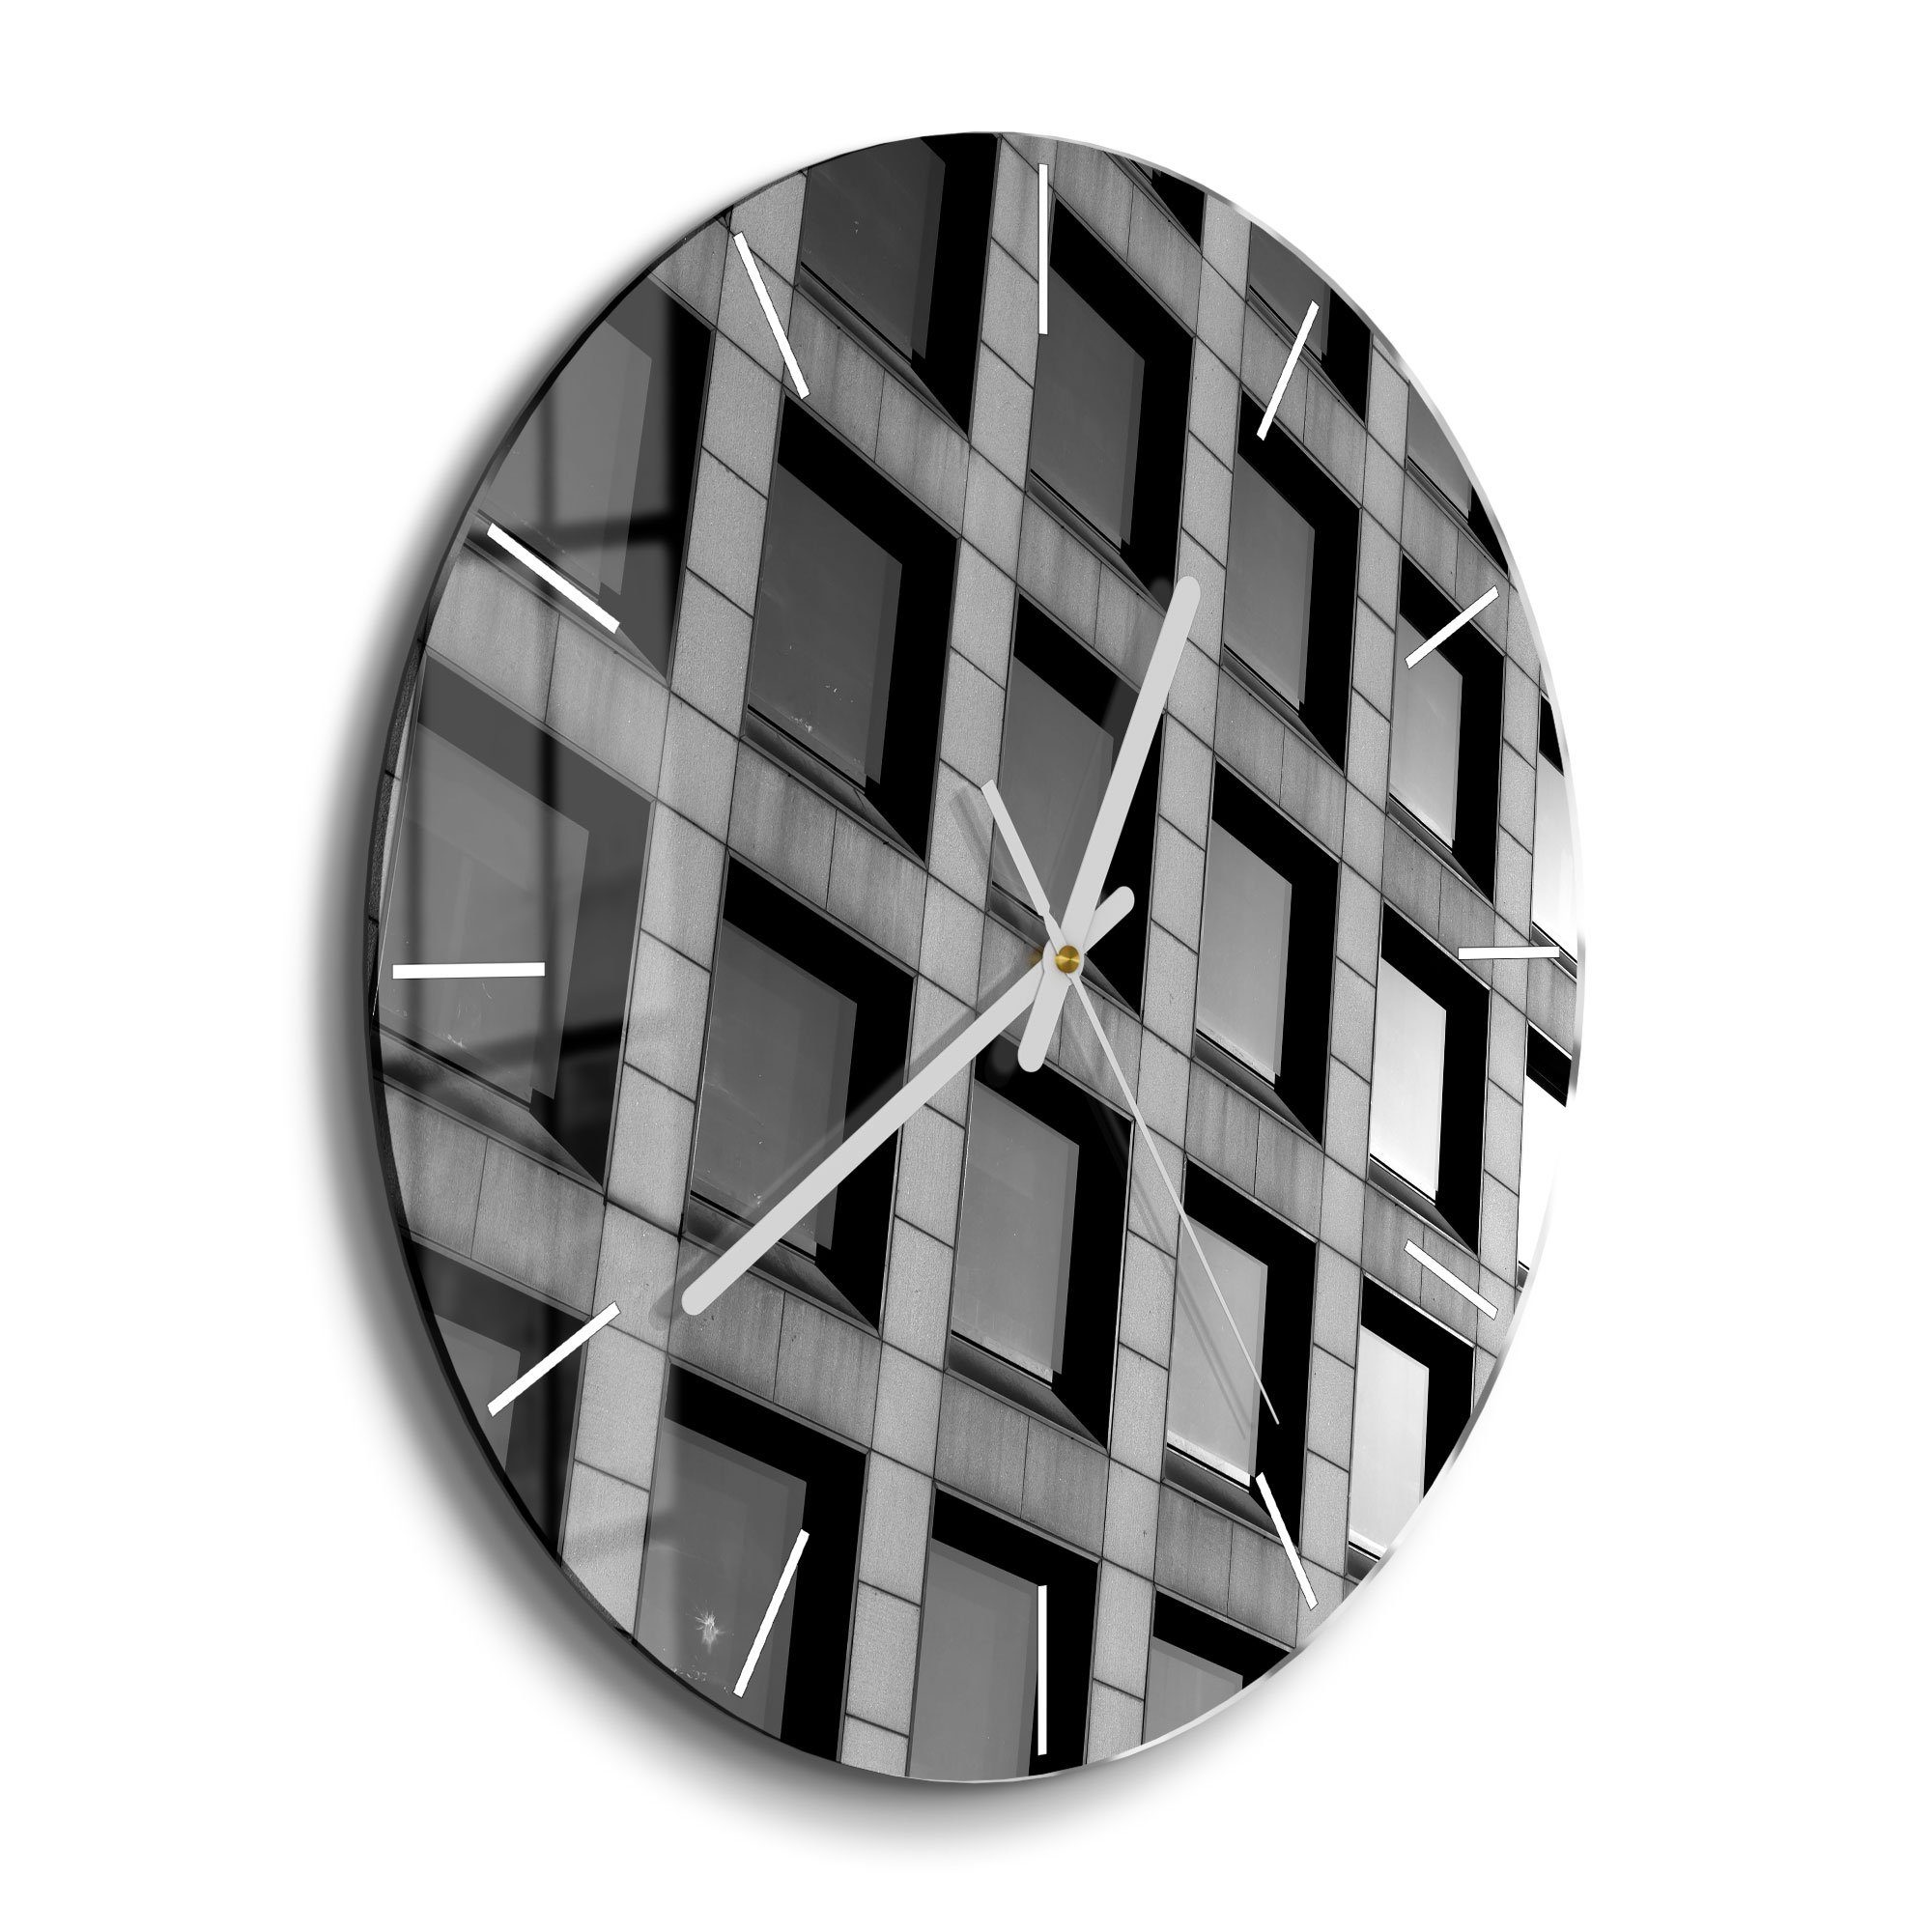 DEQORI Wanduhr 'Fensterscheiben' (Glas Glasuhr modern Wand Uhr Design  Küchenuhr)